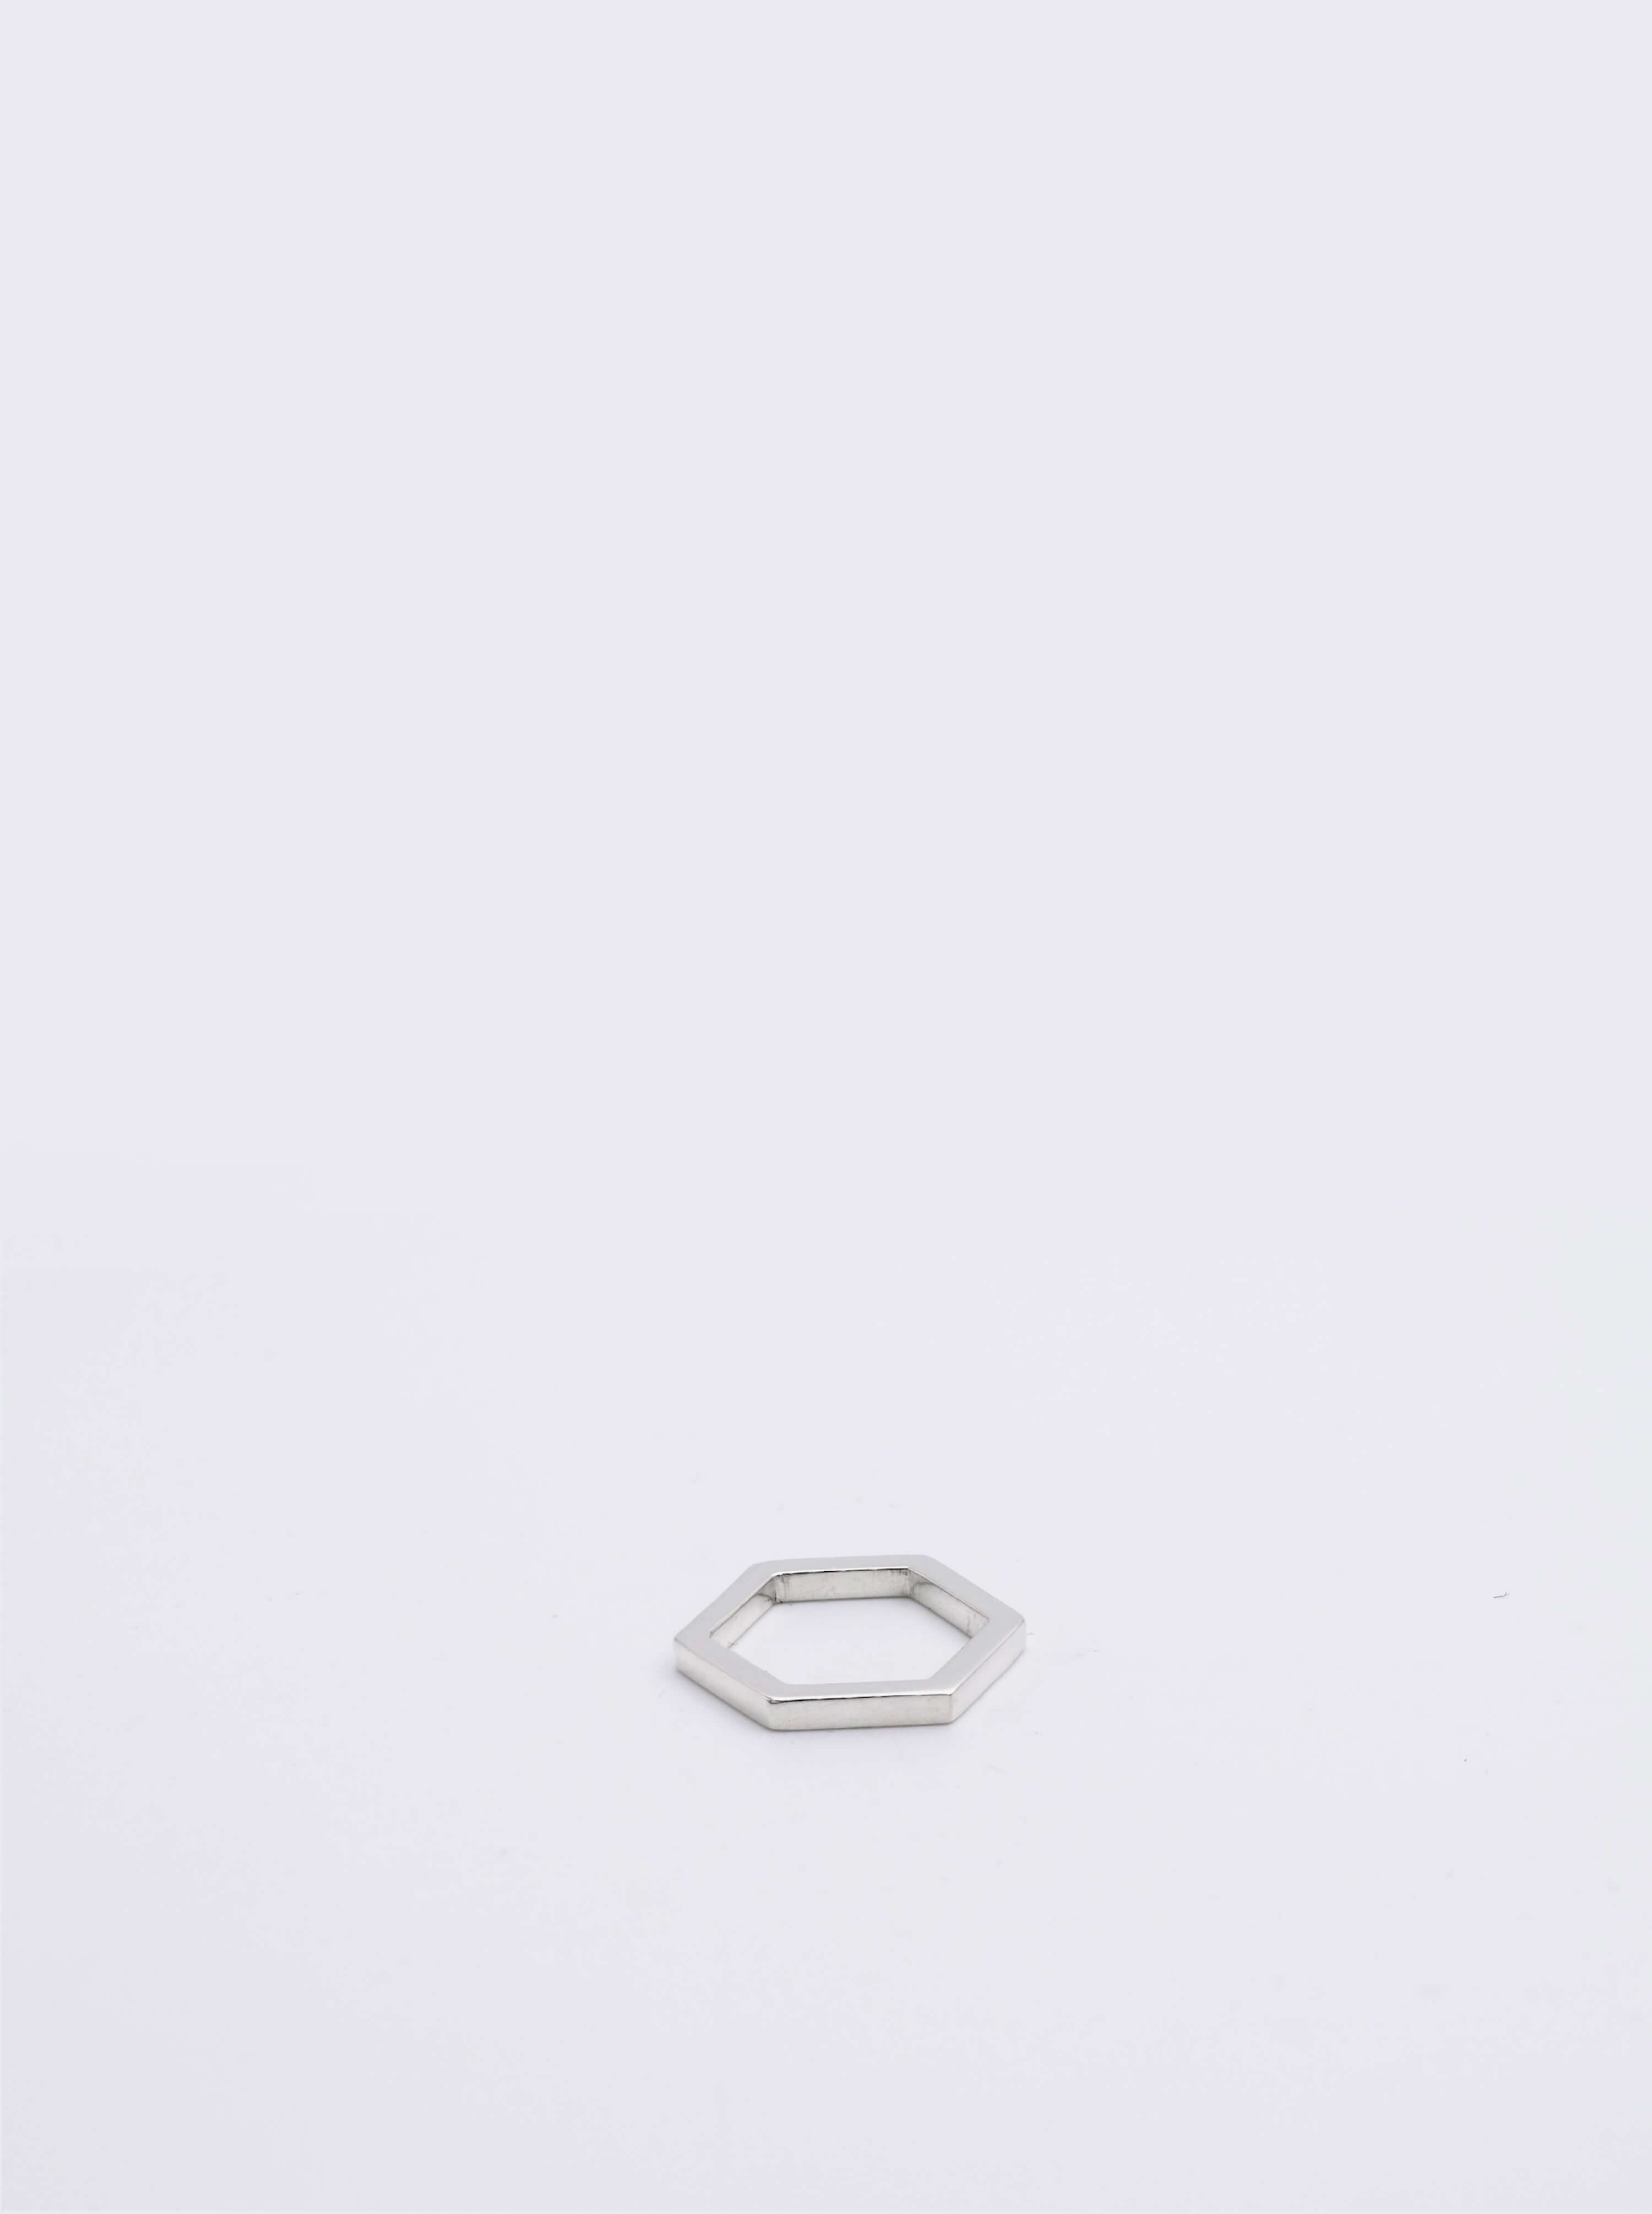 Pendentif éthique hexagonal modèle Essentiel 14mm en argent sur fond blanc.